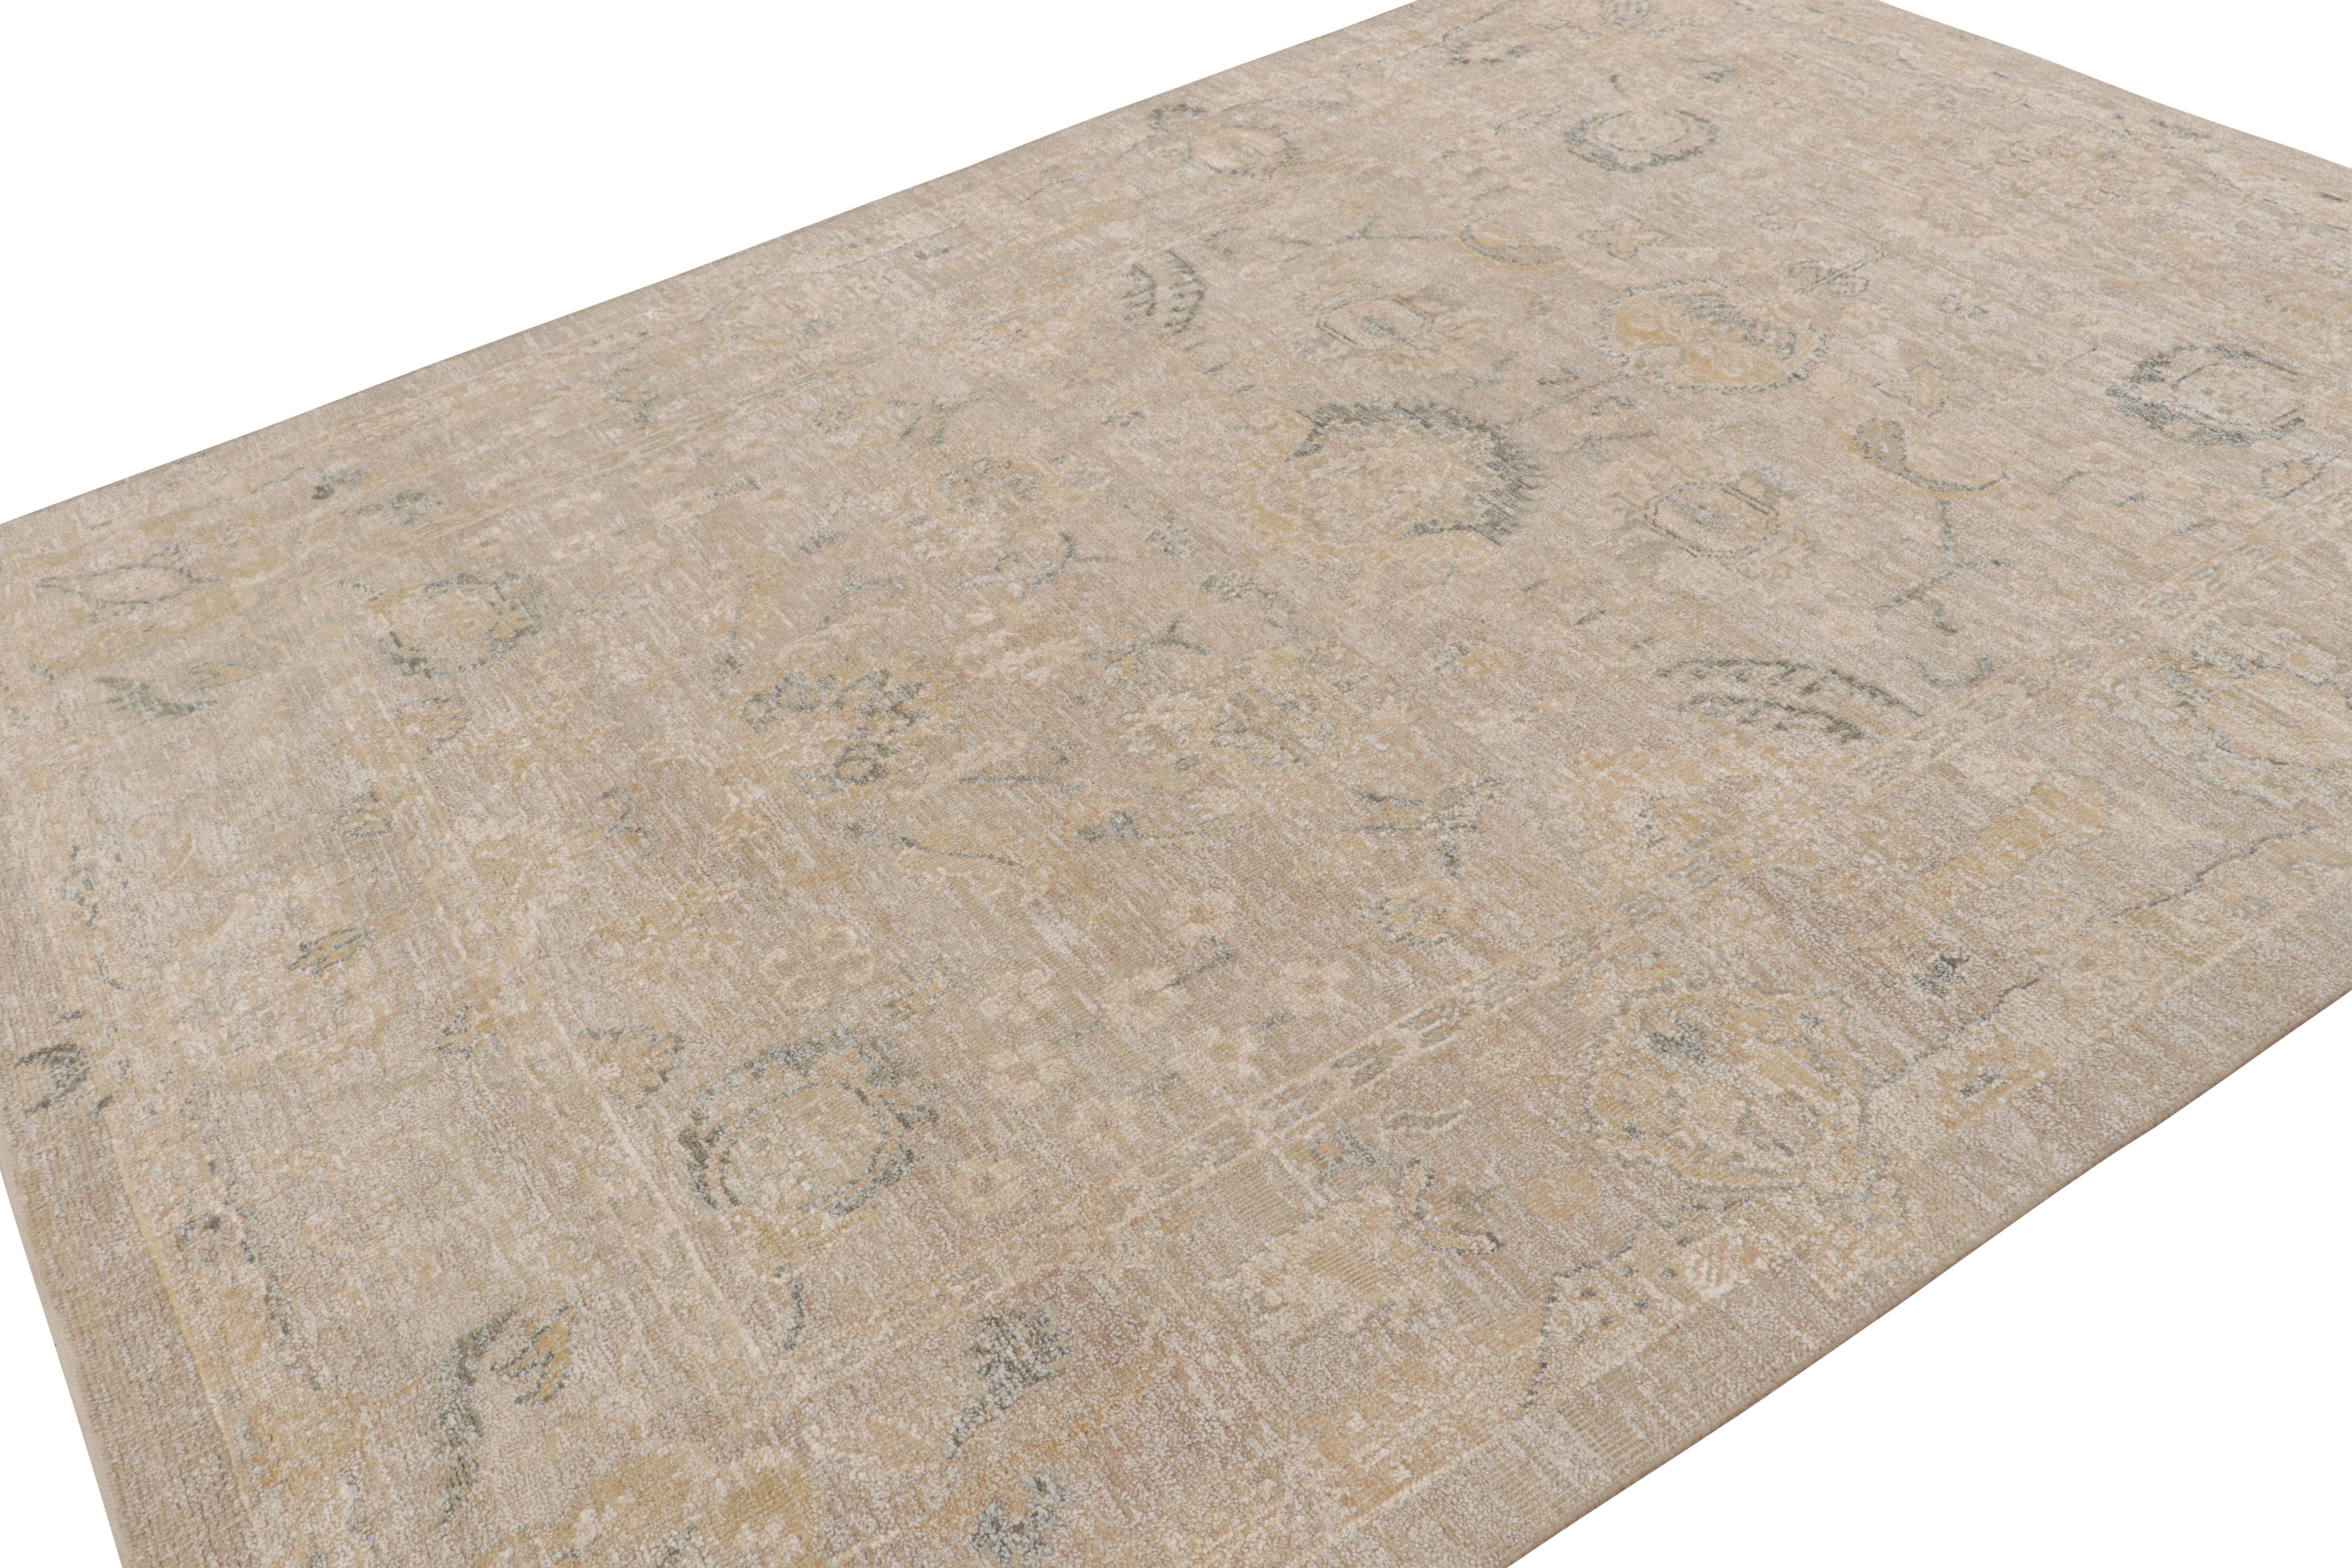 Dieser aus Wolle und Seide handgeknüpfte 8x10 große Teppich aus der Serie Modern Classics von Rug & Kilim ist von alten und antiken Oushak-Teppichen inspiriert.  

Über das Design: 

Bei diesem Stück unterstreichen beige-braune Töne die gedämpften